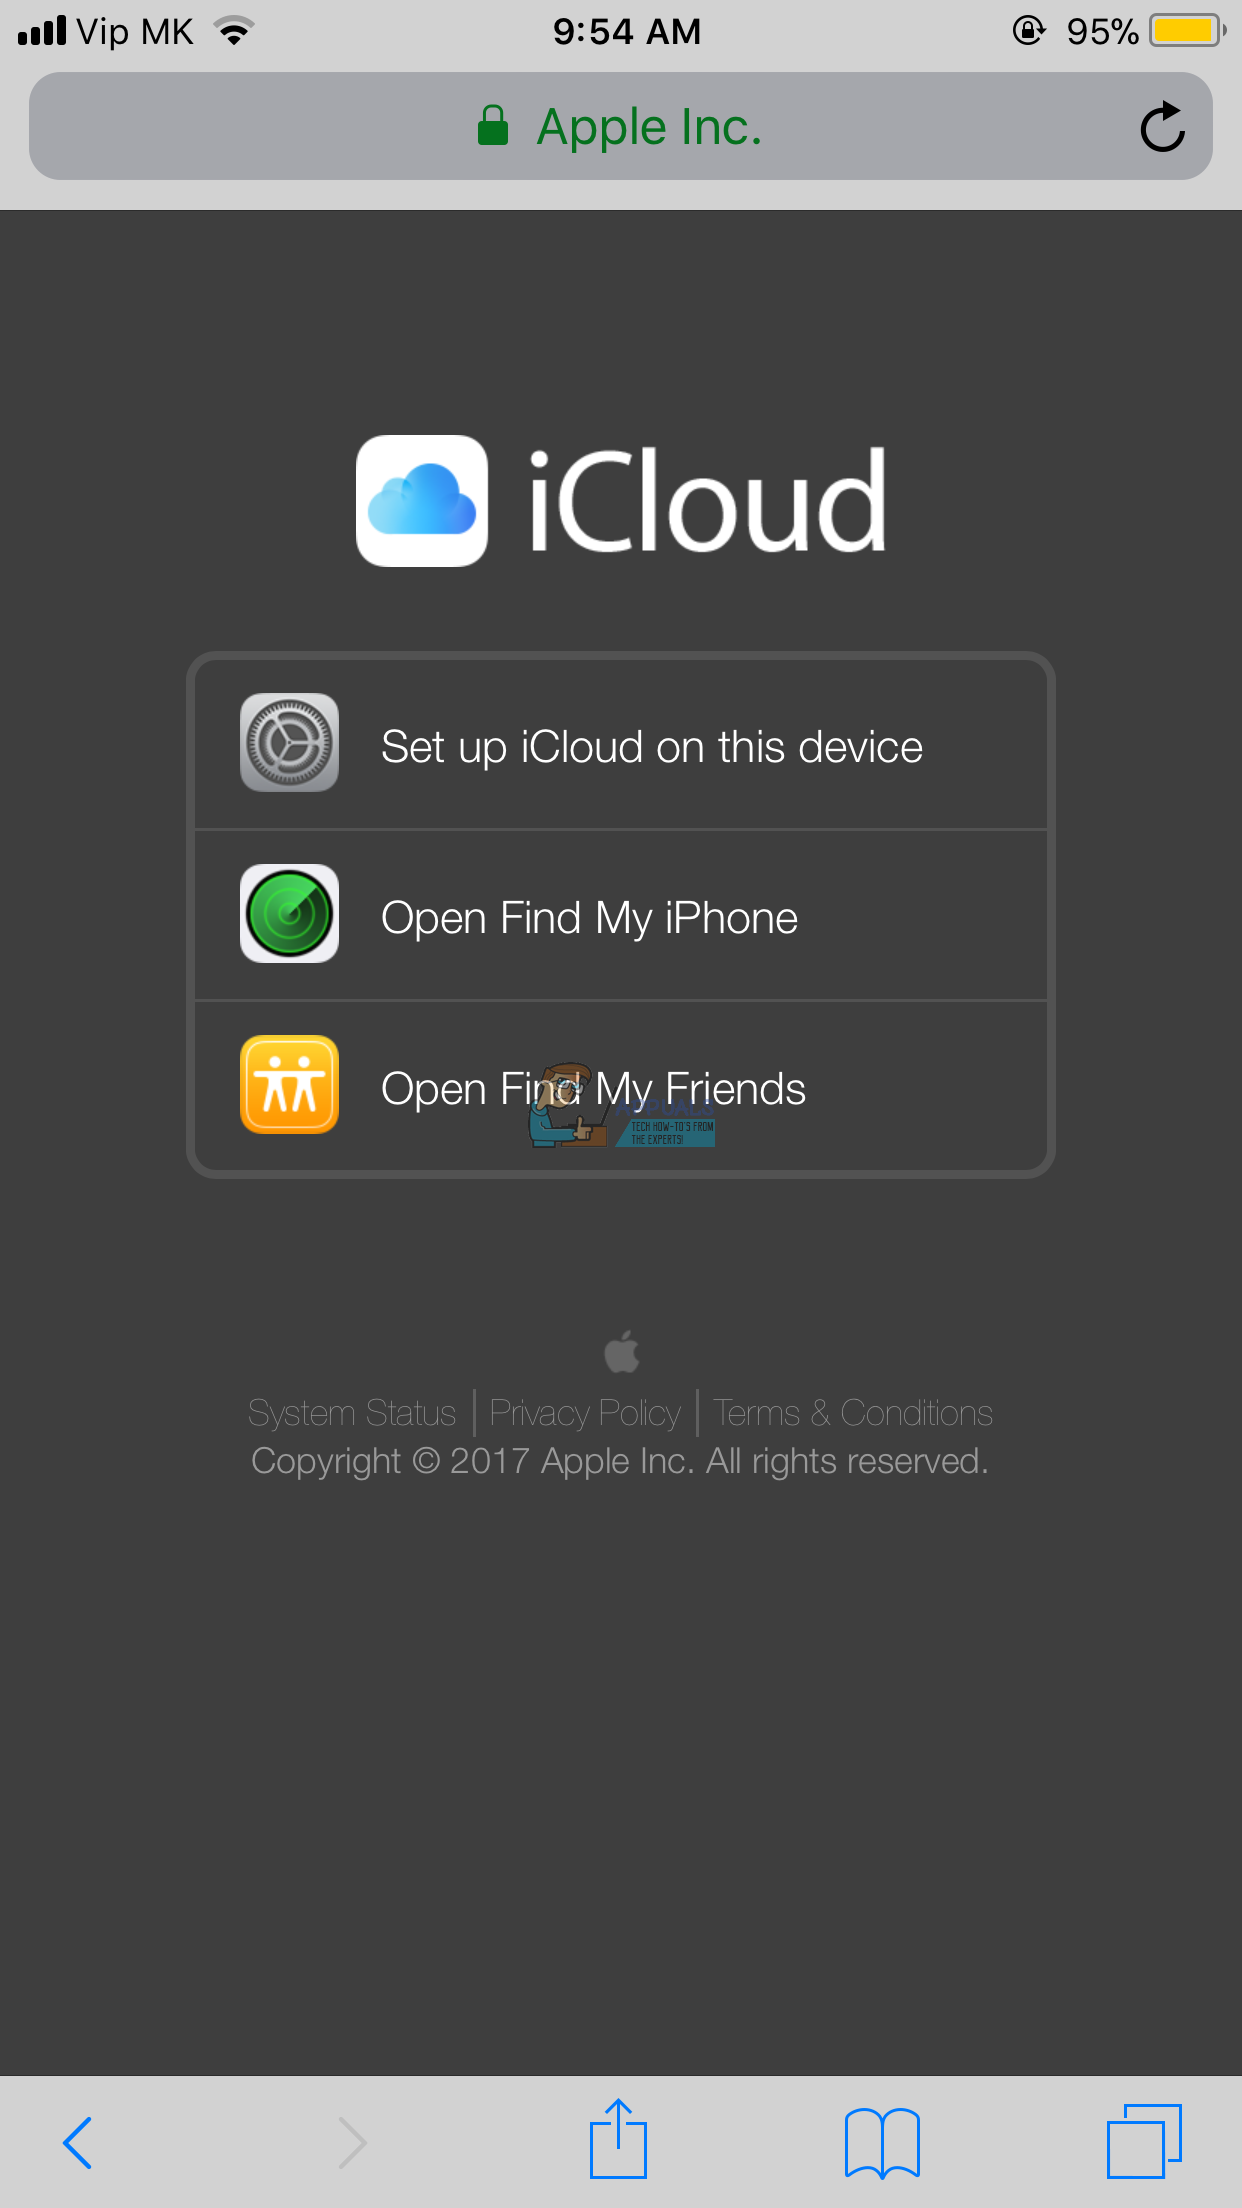 Hogyan lehet bejelentkezni az iCloud.com webhelyre iPhone vagy iPad készülékével